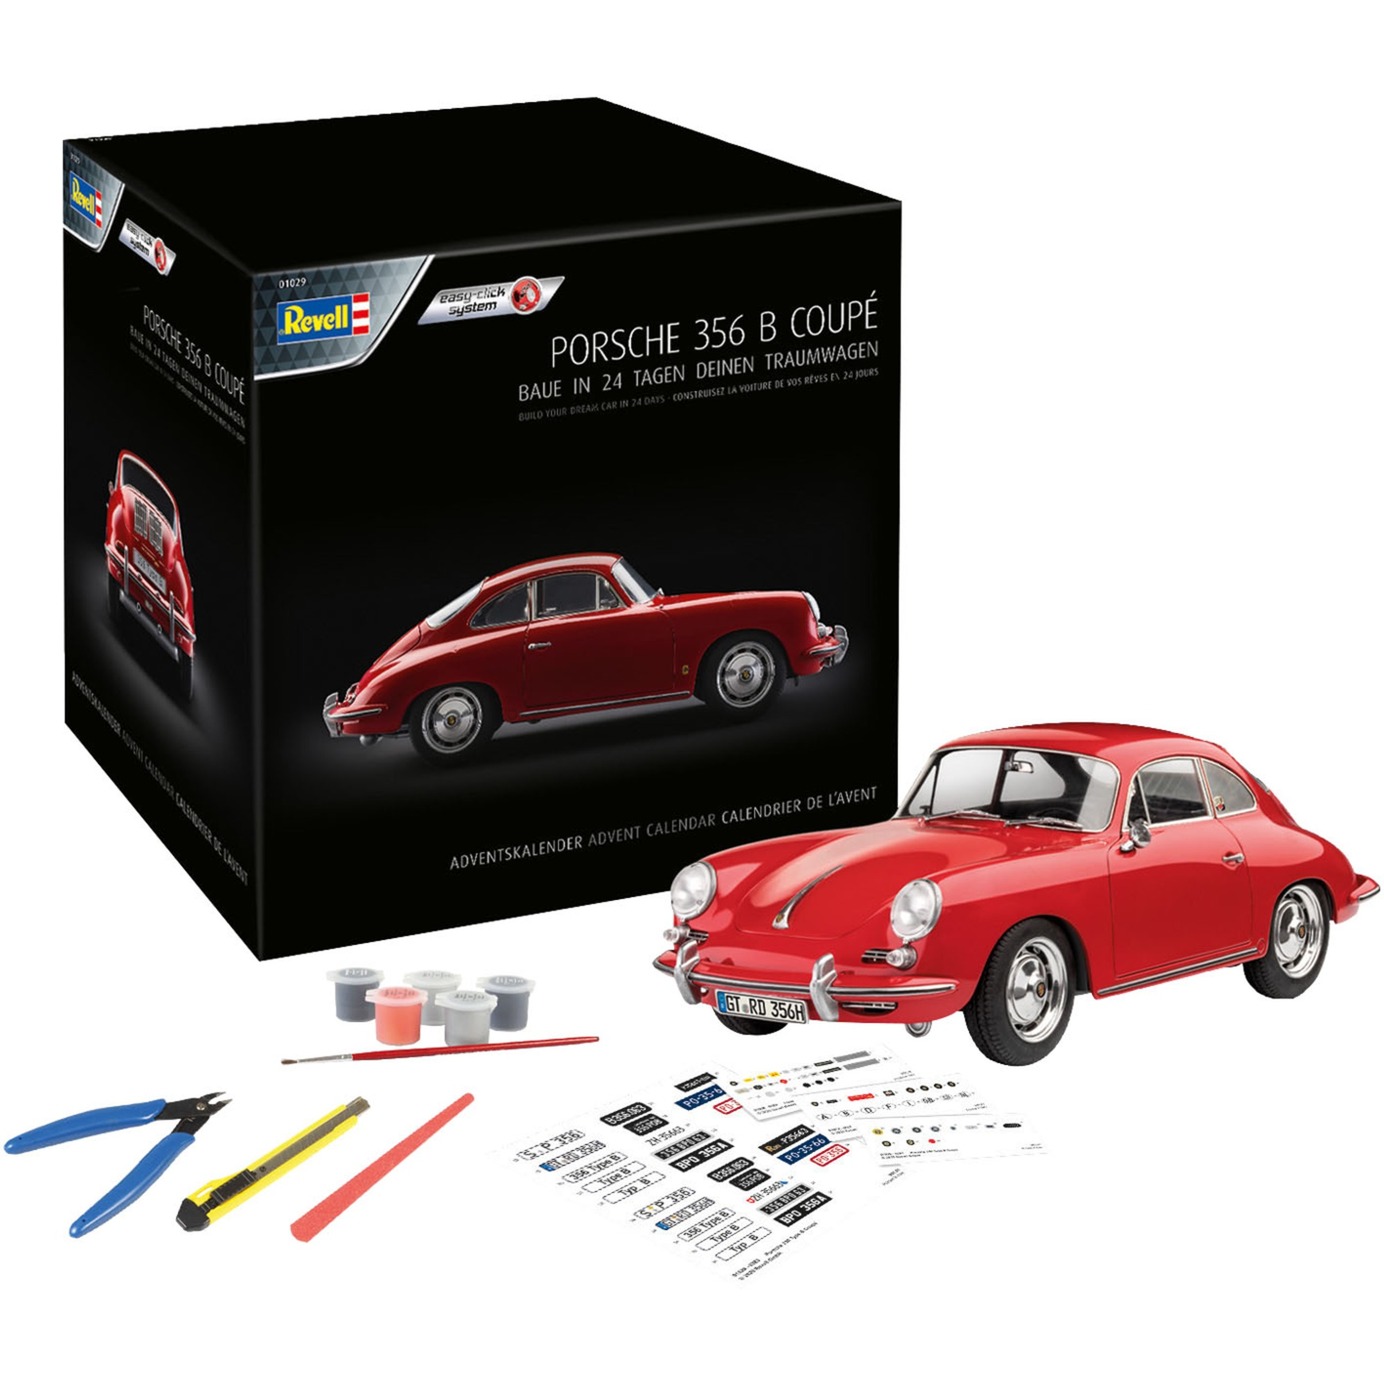 Image of Alternate - Adventskalender Porsche 356 Coupé, Modellbau online einkaufen bei Alternate